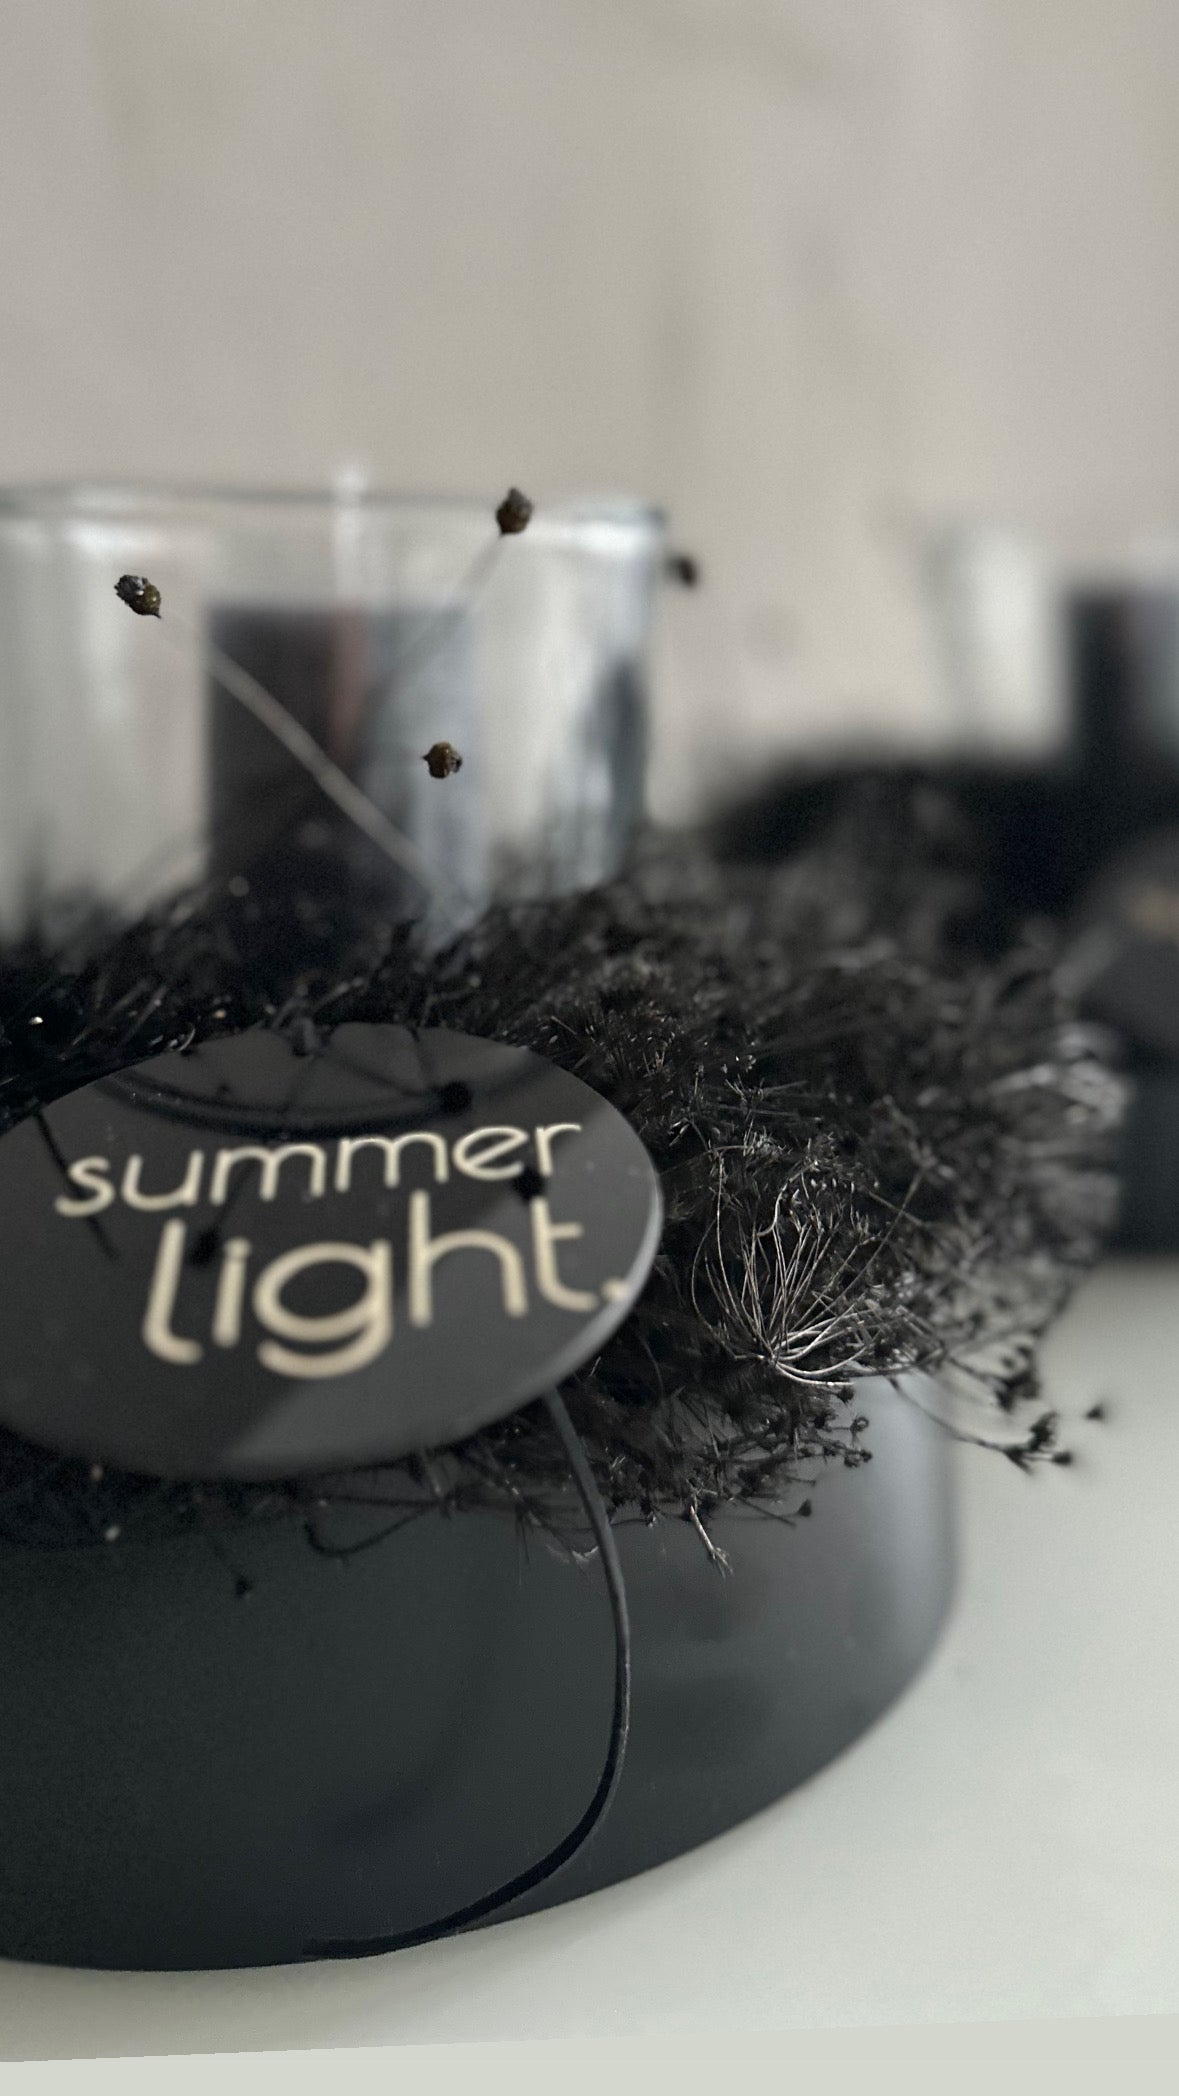 Summer light - black